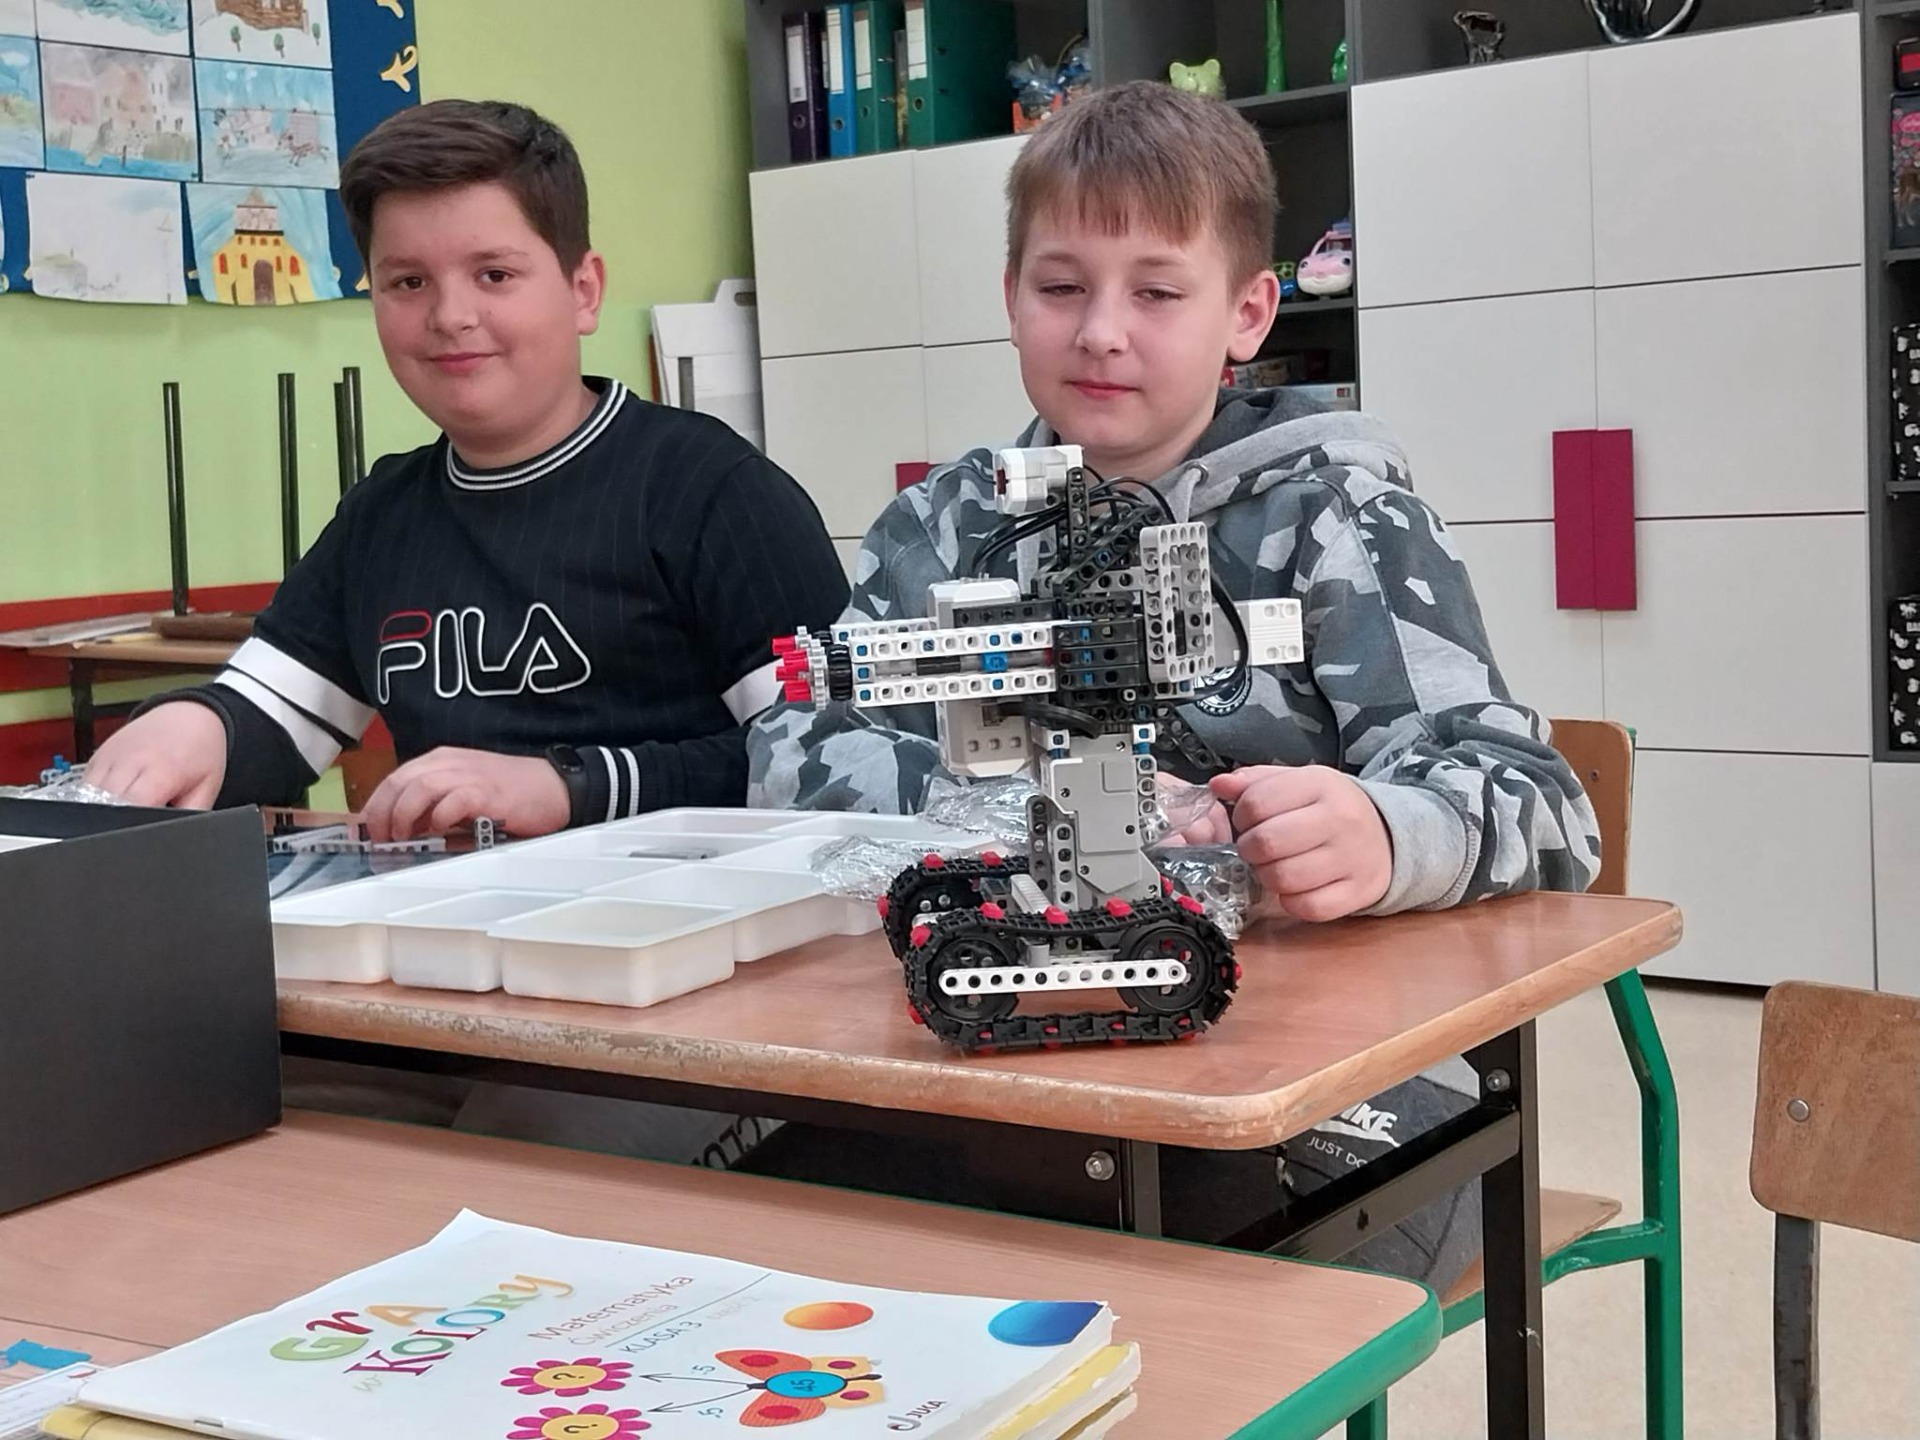 Uczniowie budują i programują roboty na zajęciach koła informatycznego